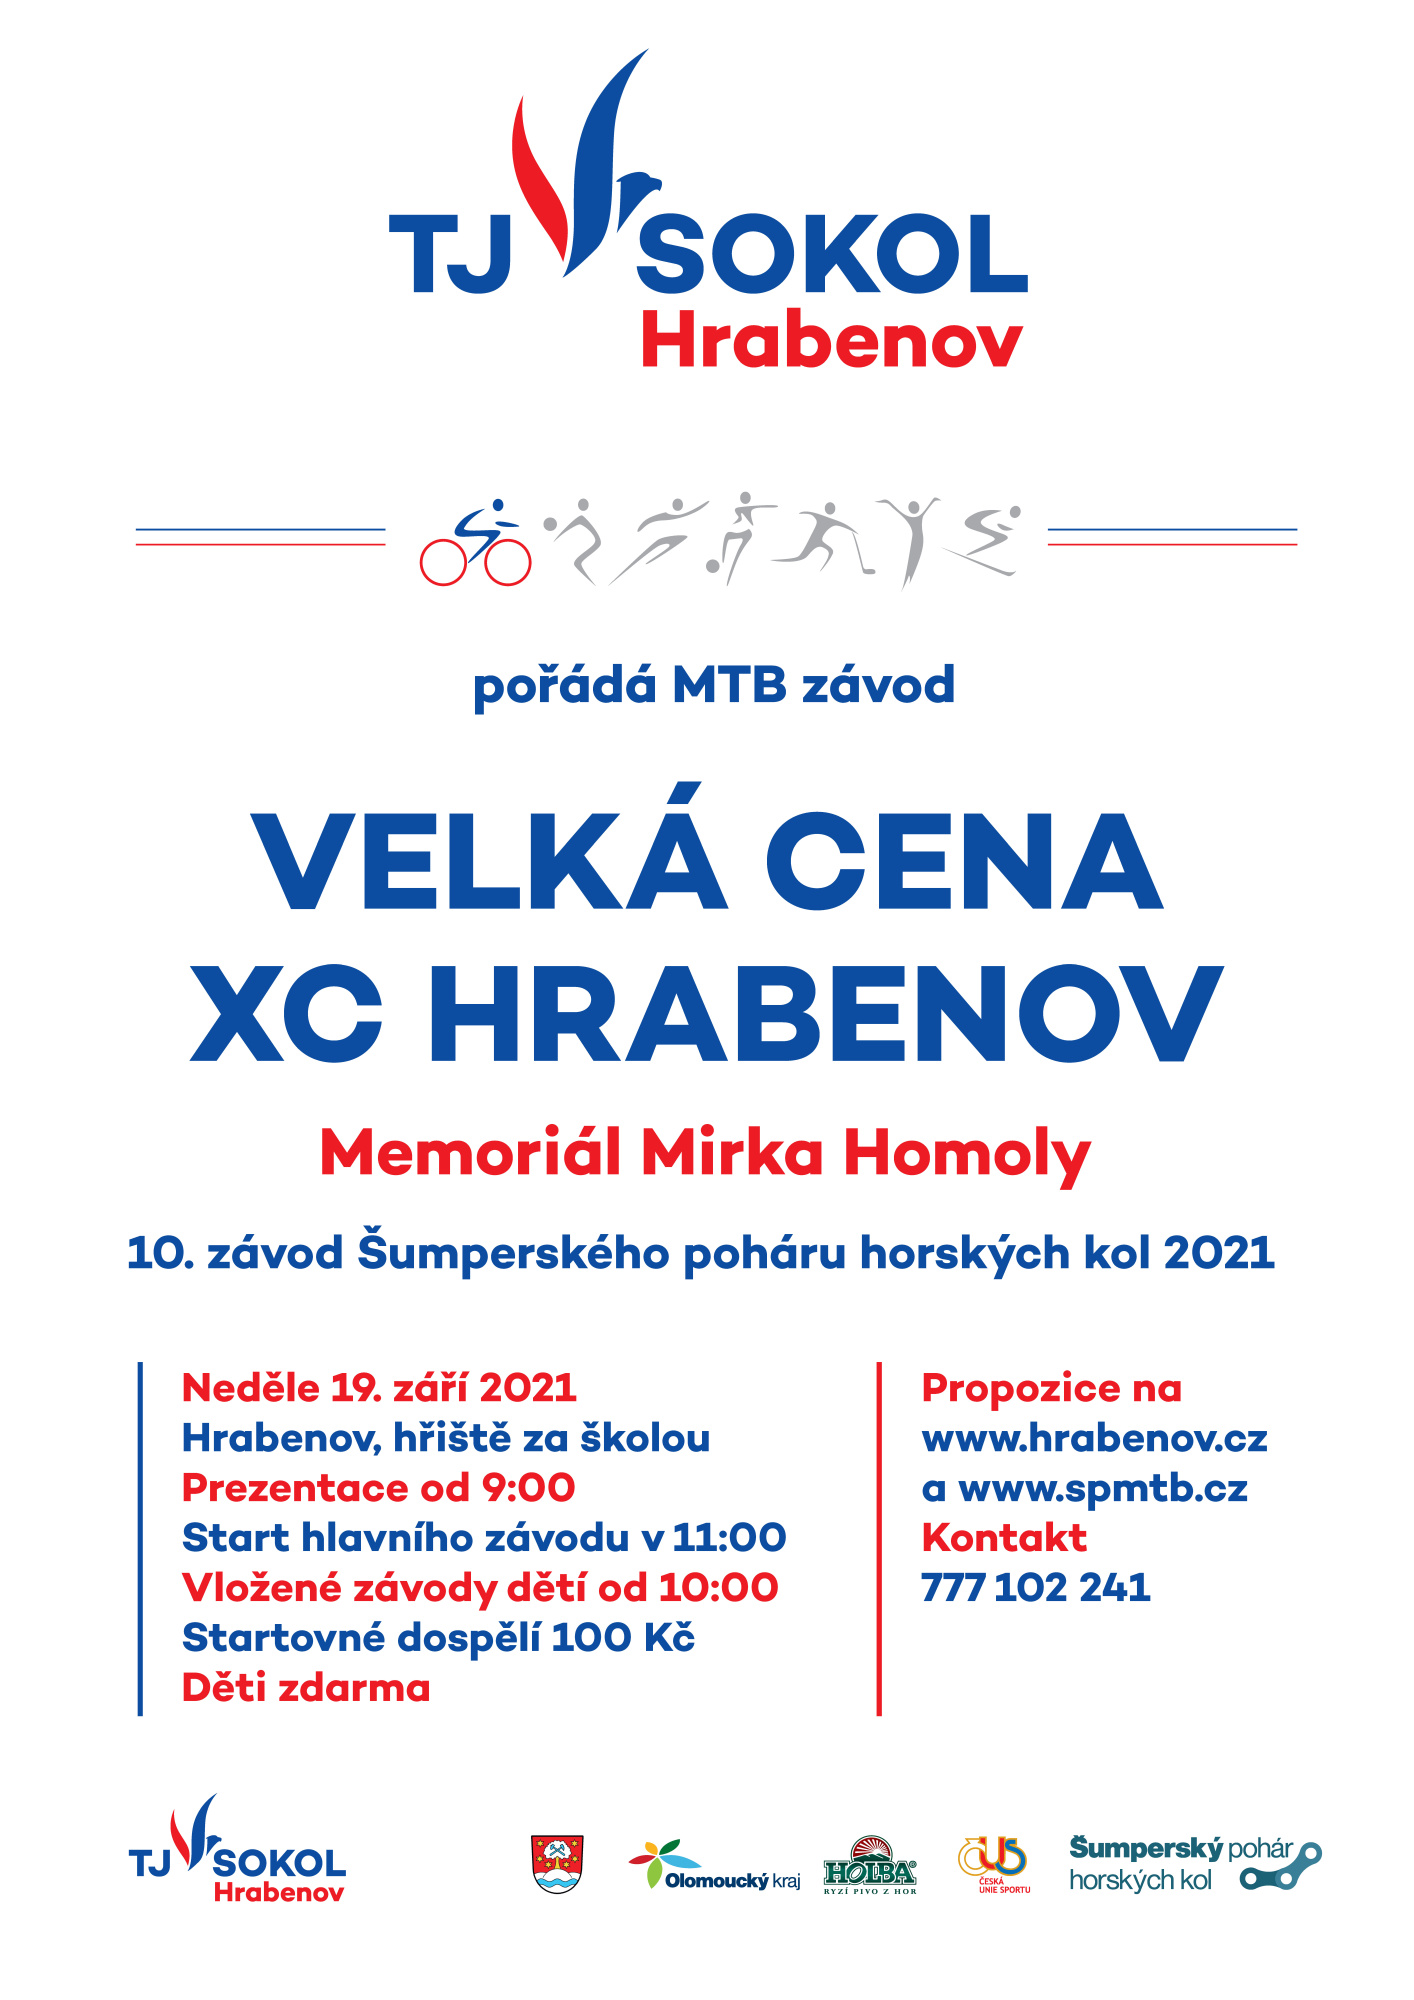 VC XC Hrabenov se jede v neděli 19. září